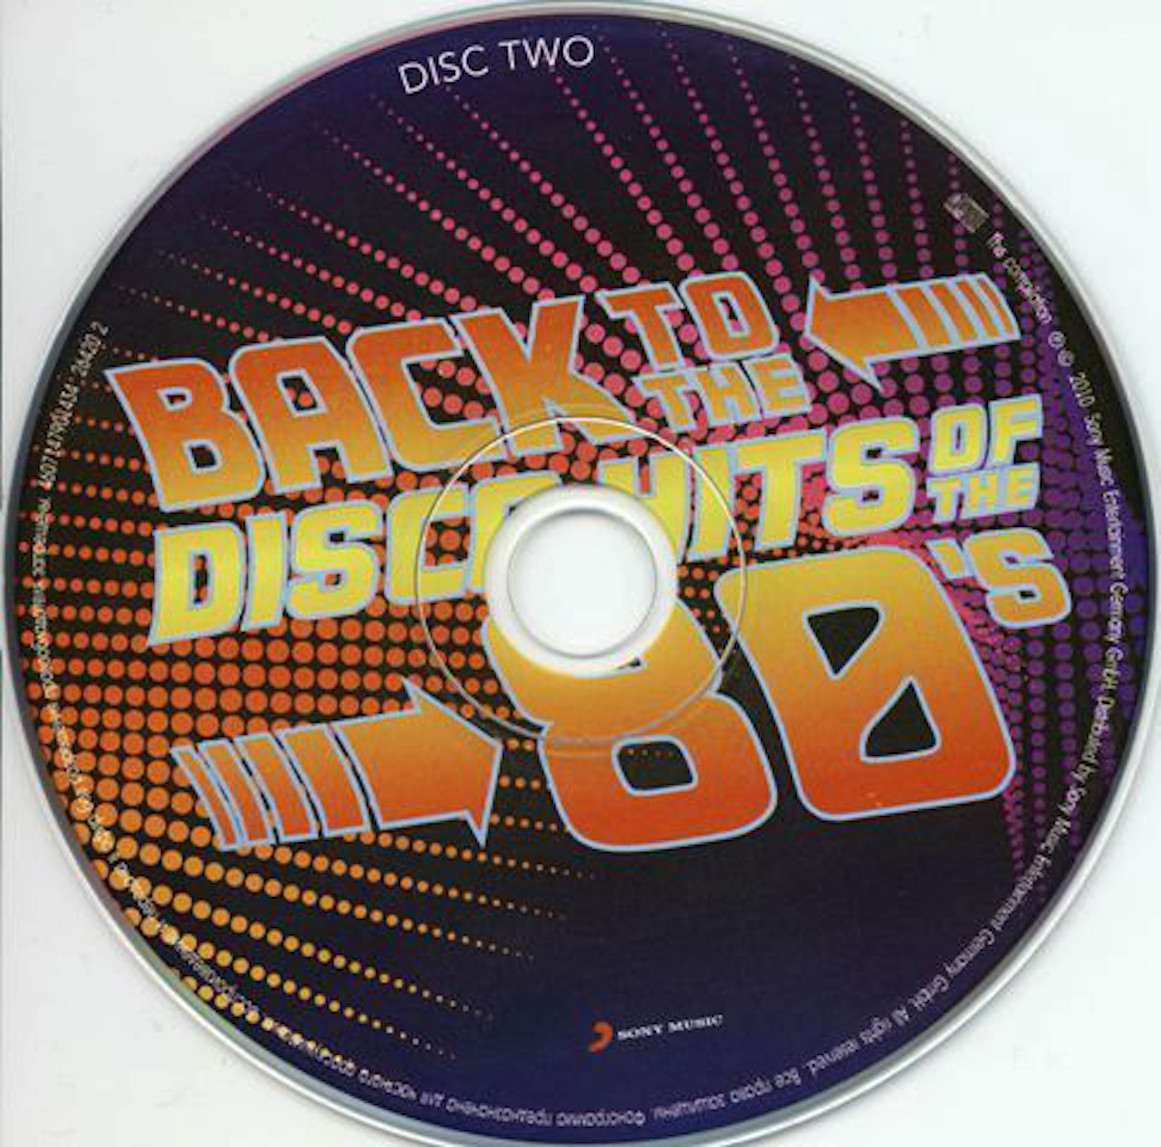 New disco hits. Диск Crazy Disco 80s. 80s Hits. Диски 80-90. Back to the Disco Hits of the 80's.